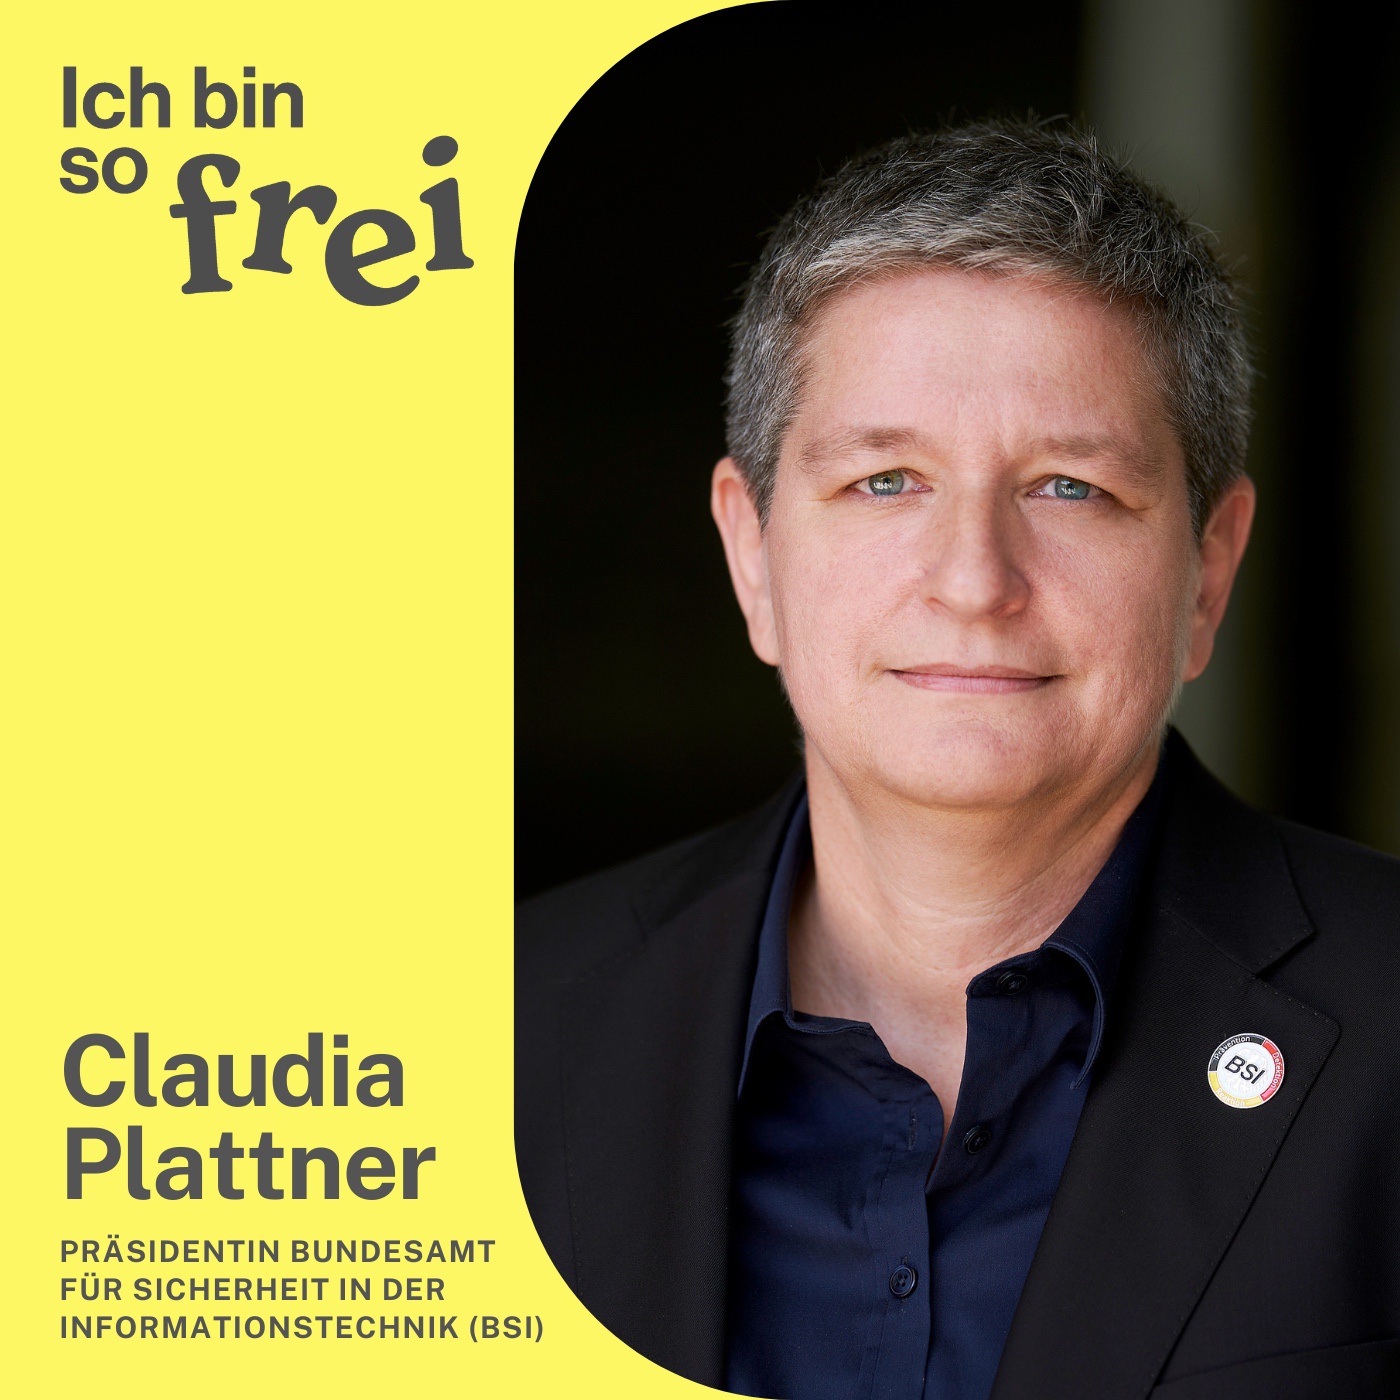 #46 Claudia Plattner, Präsidentin BSI: Wir haben Cyber noch nicht verstanden